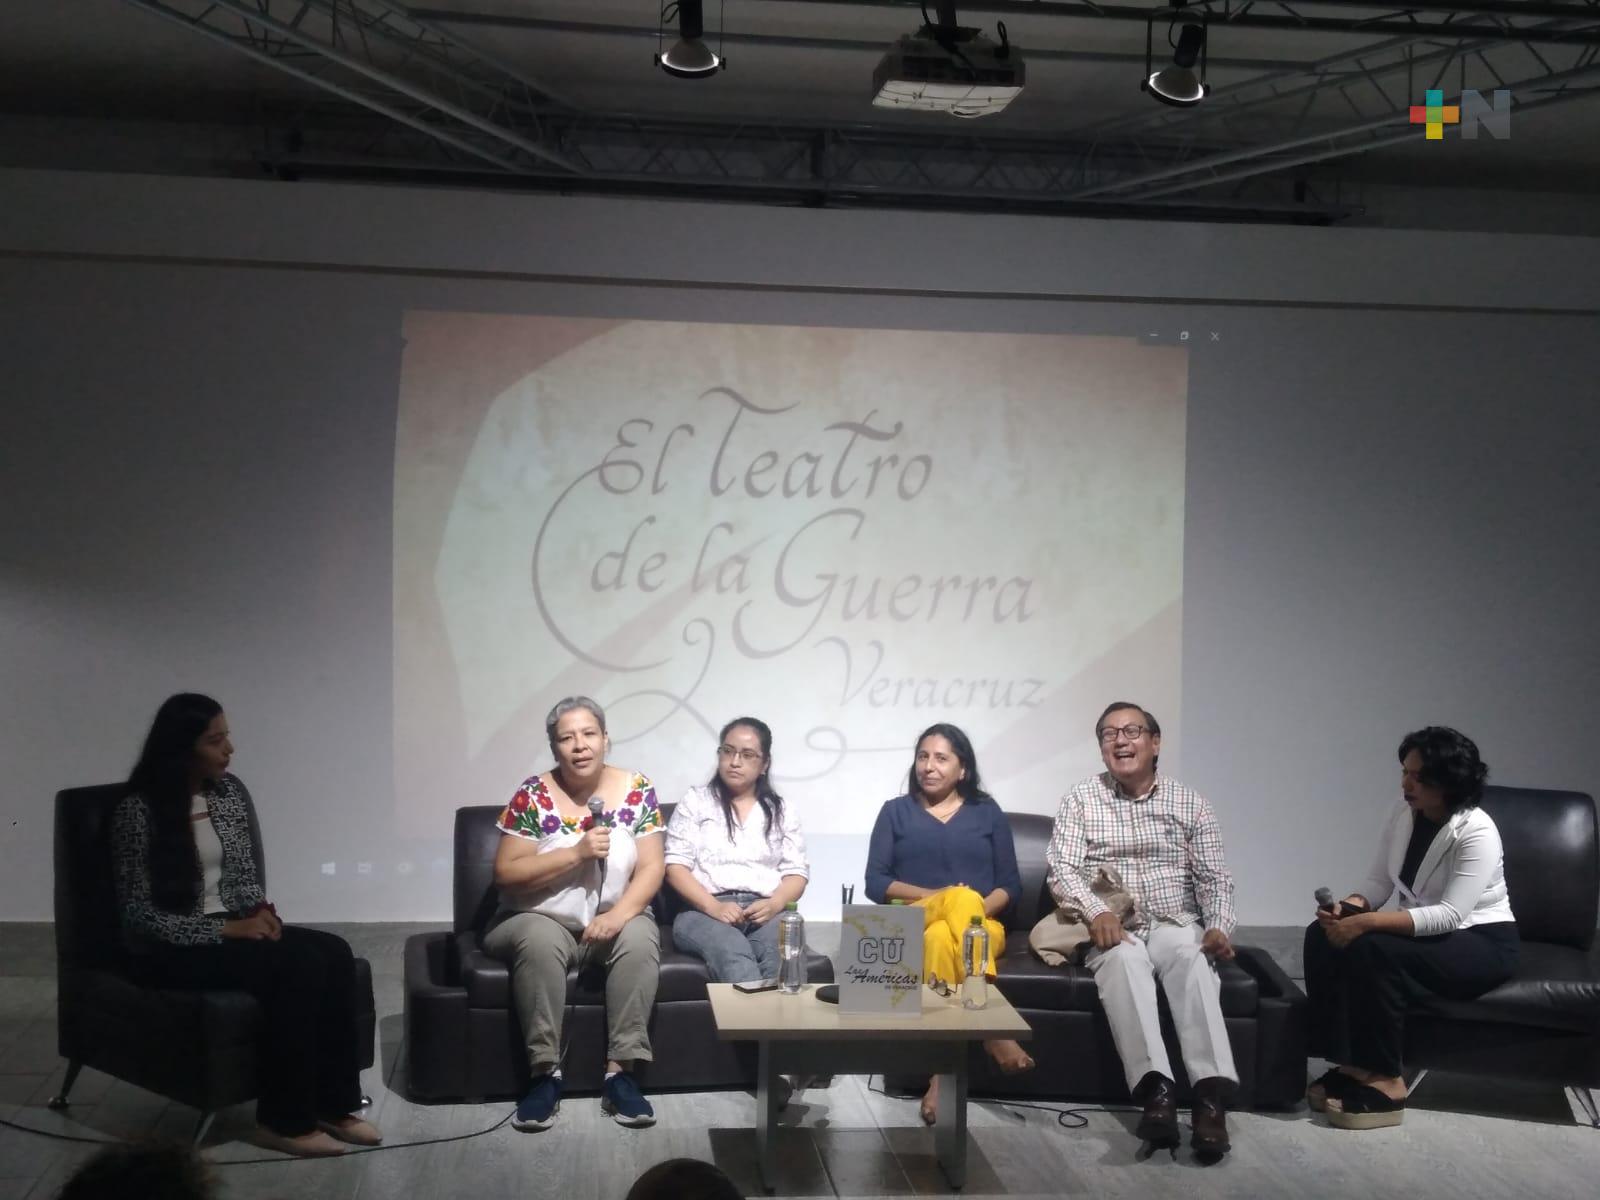 Presenta RTV el libro “Entre bastidores. El arte de Veracruz, el teatro de la guerra”